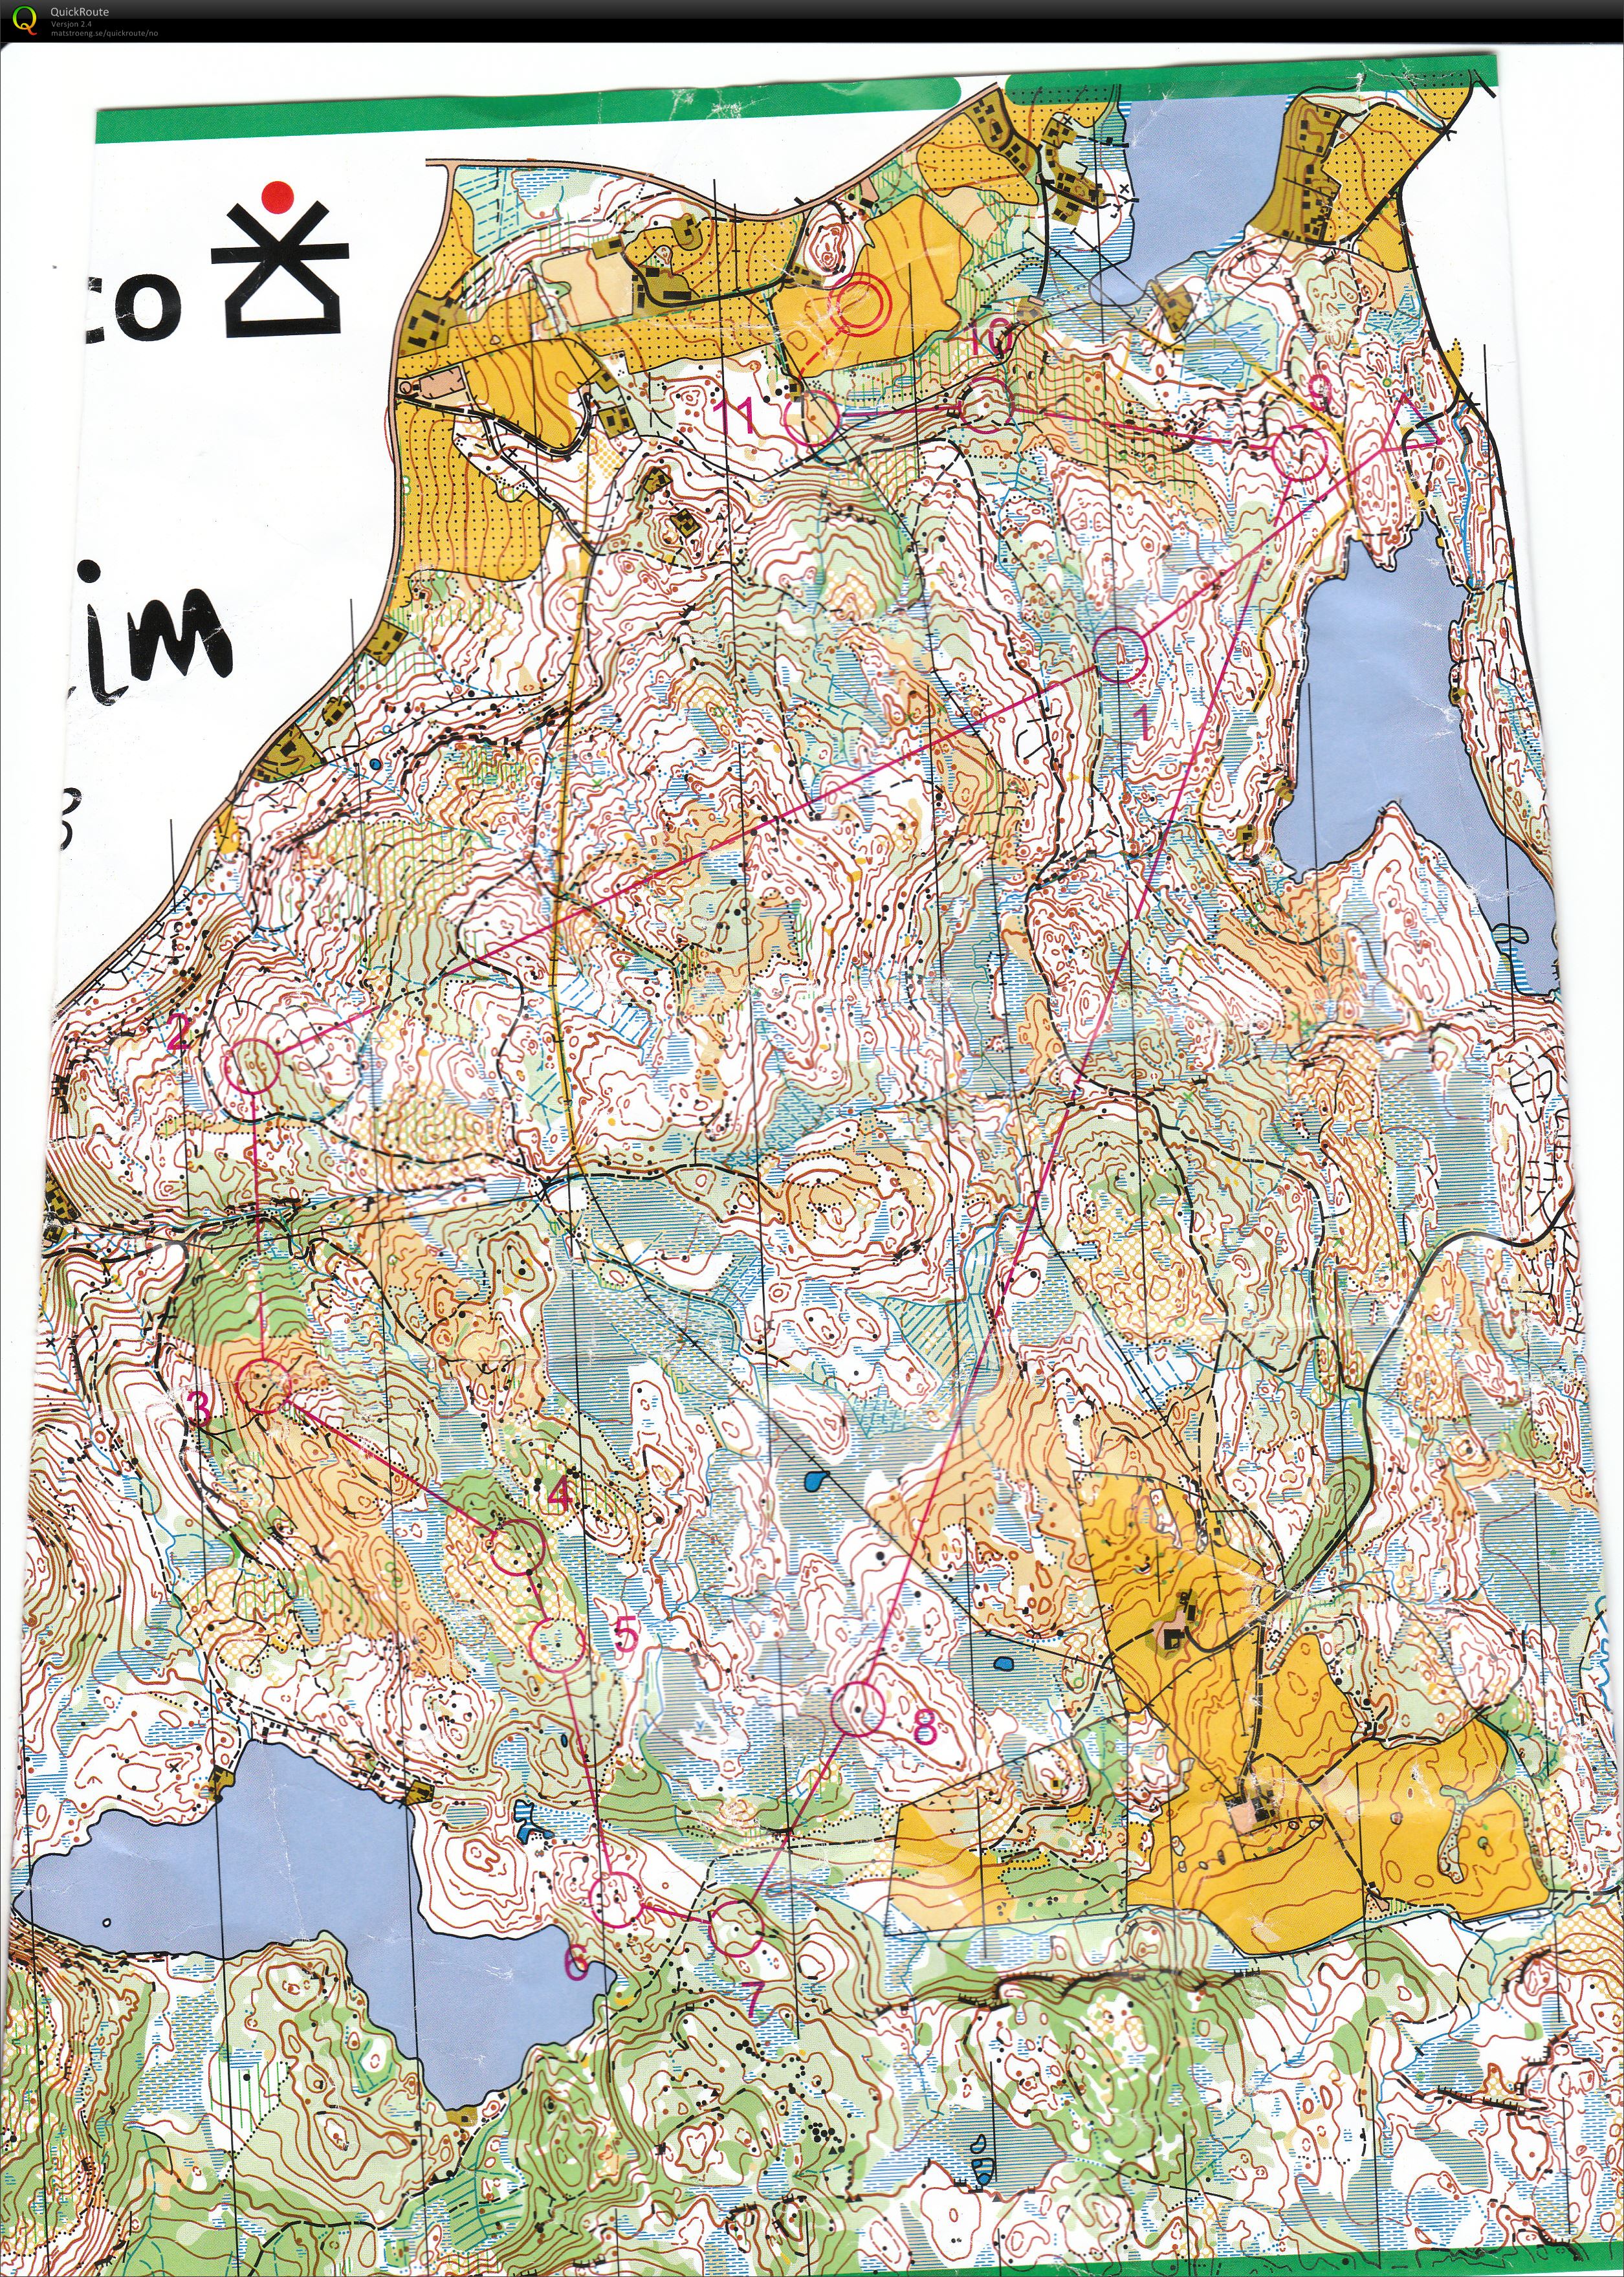 Tour de Trondheim Lang (2013-09-08)